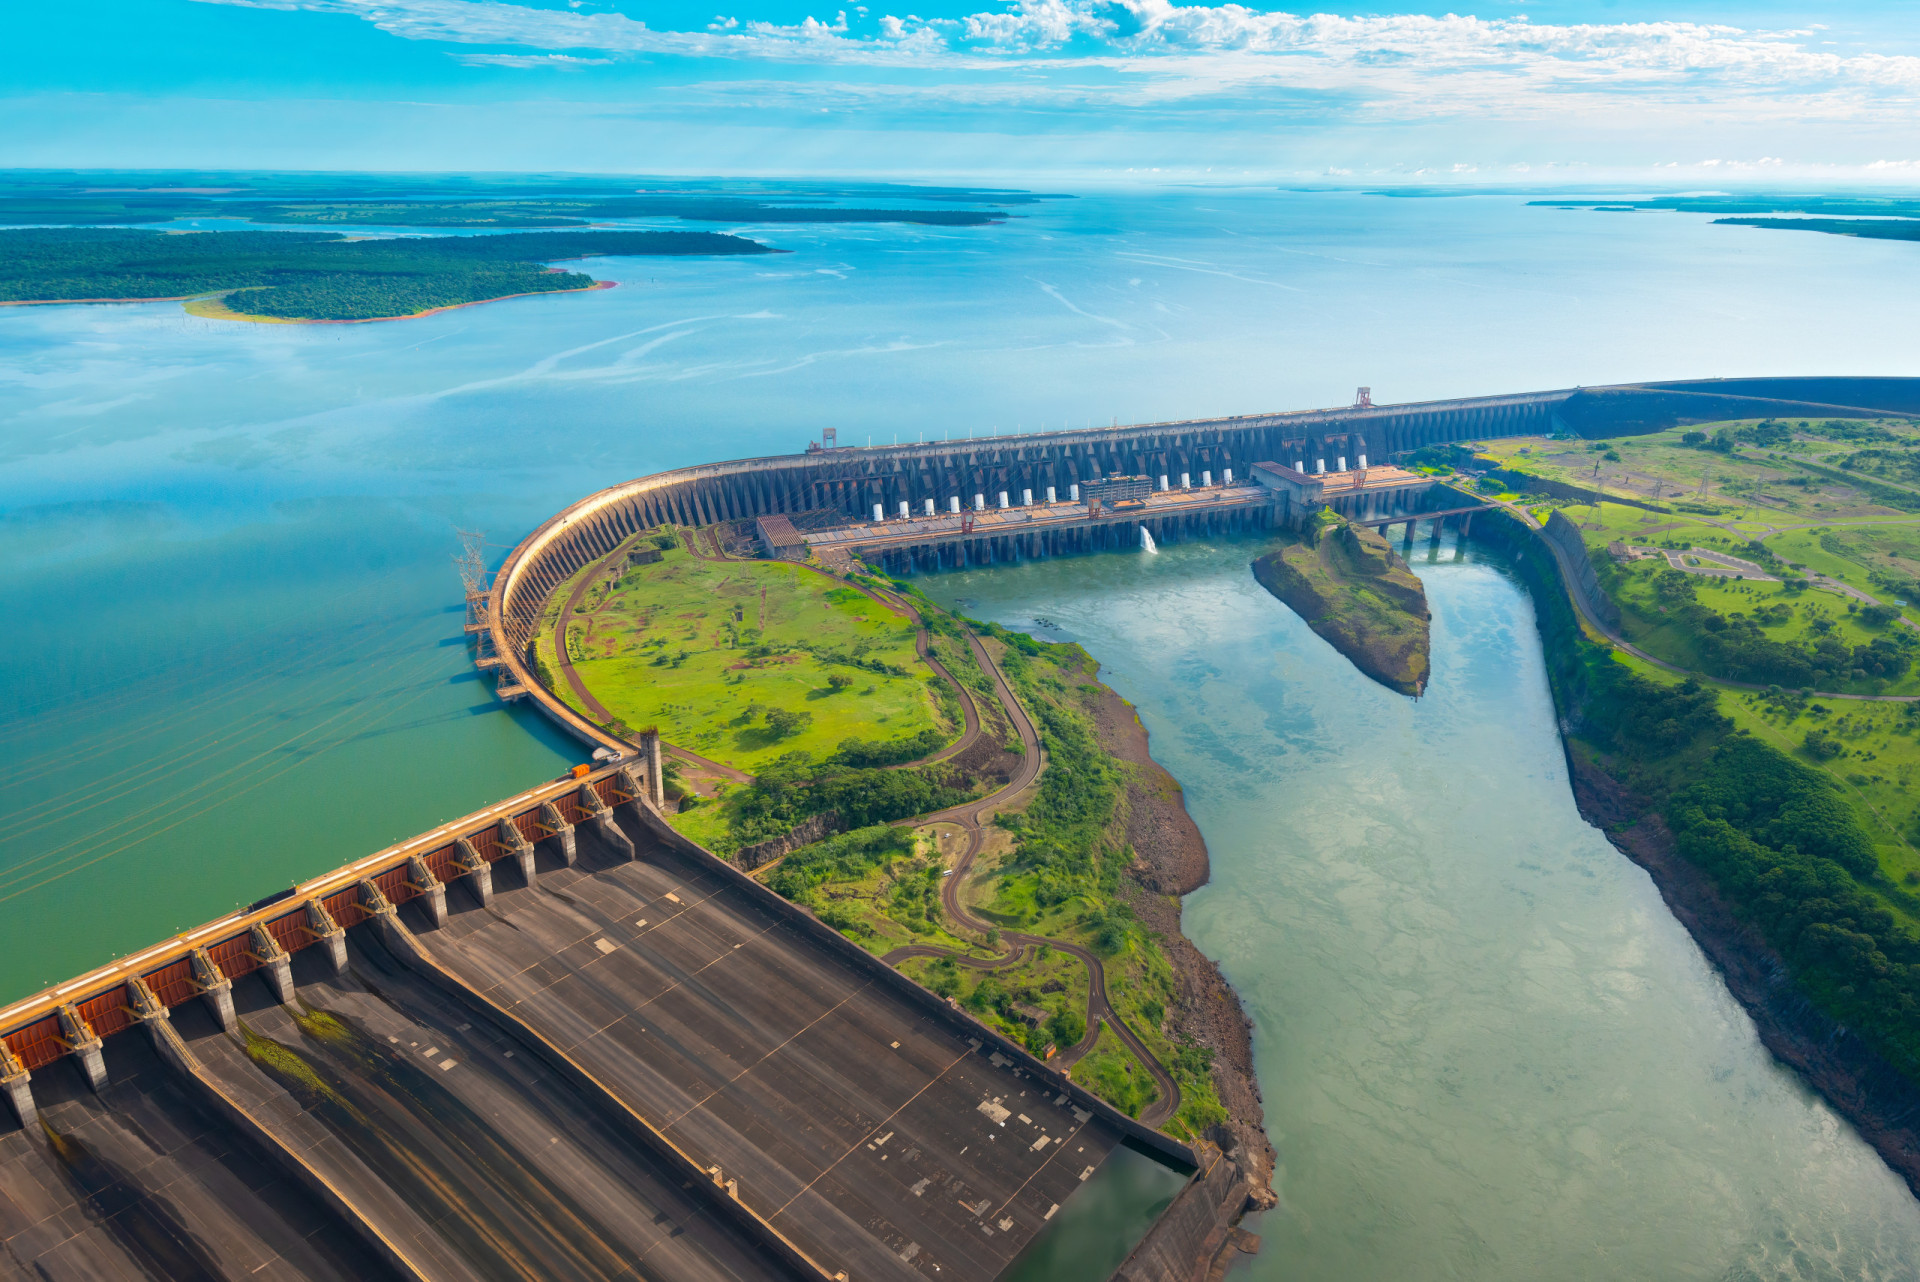 <p>Le barrage hydroélectrique d'Itaipu est le projet gouvernemental le plus coûteux du pays à ce jour. Il a été achevé en 1982 et a coûté 19,6 milliards de dollars à l'époque, soit l'équivalent de 56,7 milliards de dollars aujourd'hui, ou 52 milliards d'euros.</p><p><a href="https://www.msn.com/fr-ca/community/channel/vid-7xx8mnucu55yw63we9va2gwr7uihbxwc68fxqp25x6tg4ftibpra?cvid=94631541bc0f4f89bfd59158d696ad7e">Suivez-nous et accédez tous les jours à du contenu exclusif</a></p>